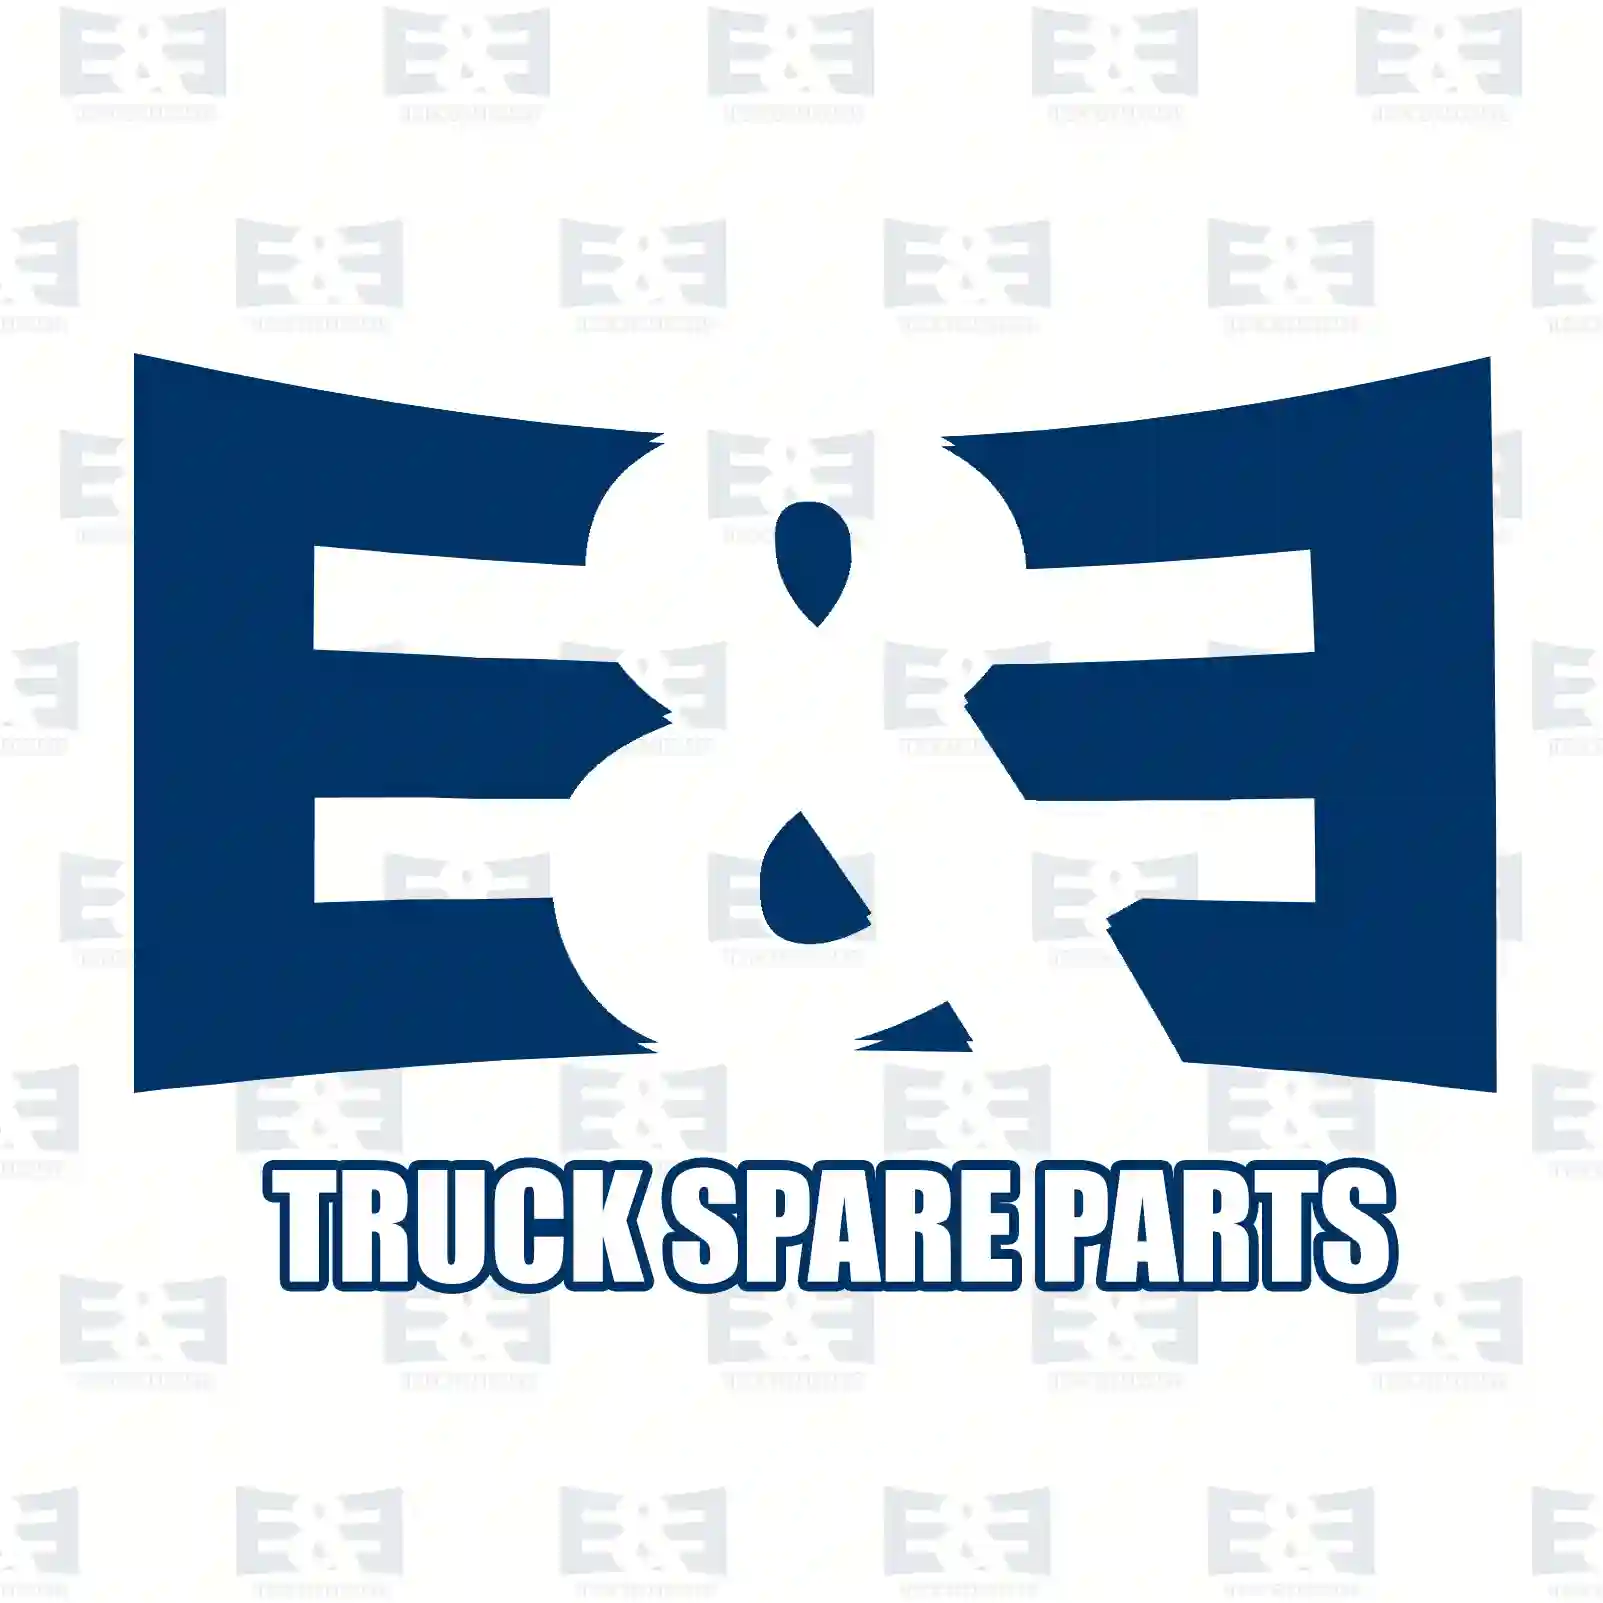 Pressure sensor, 2E2209573, 2859674, 1399522, BG5X-9D290-BA, 04890193, 42563048, 4890193, 504358206, 51094137002, 51274210156, 51274210169, 961200690014, 16959, 2R0906051B, ZG20736-0008 ||  2E2209573 E&E Truck Spare Parts | Truck Spare Parts, Auotomotive Spare Parts Pressure sensor, 2E2209573, 2859674, 1399522, BG5X-9D290-BA, 04890193, 42563048, 4890193, 504358206, 51094137002, 51274210156, 51274210169, 961200690014, 16959, 2R0906051B, ZG20736-0008 ||  2E2209573 E&E Truck Spare Parts | Truck Spare Parts, Auotomotive Spare Parts